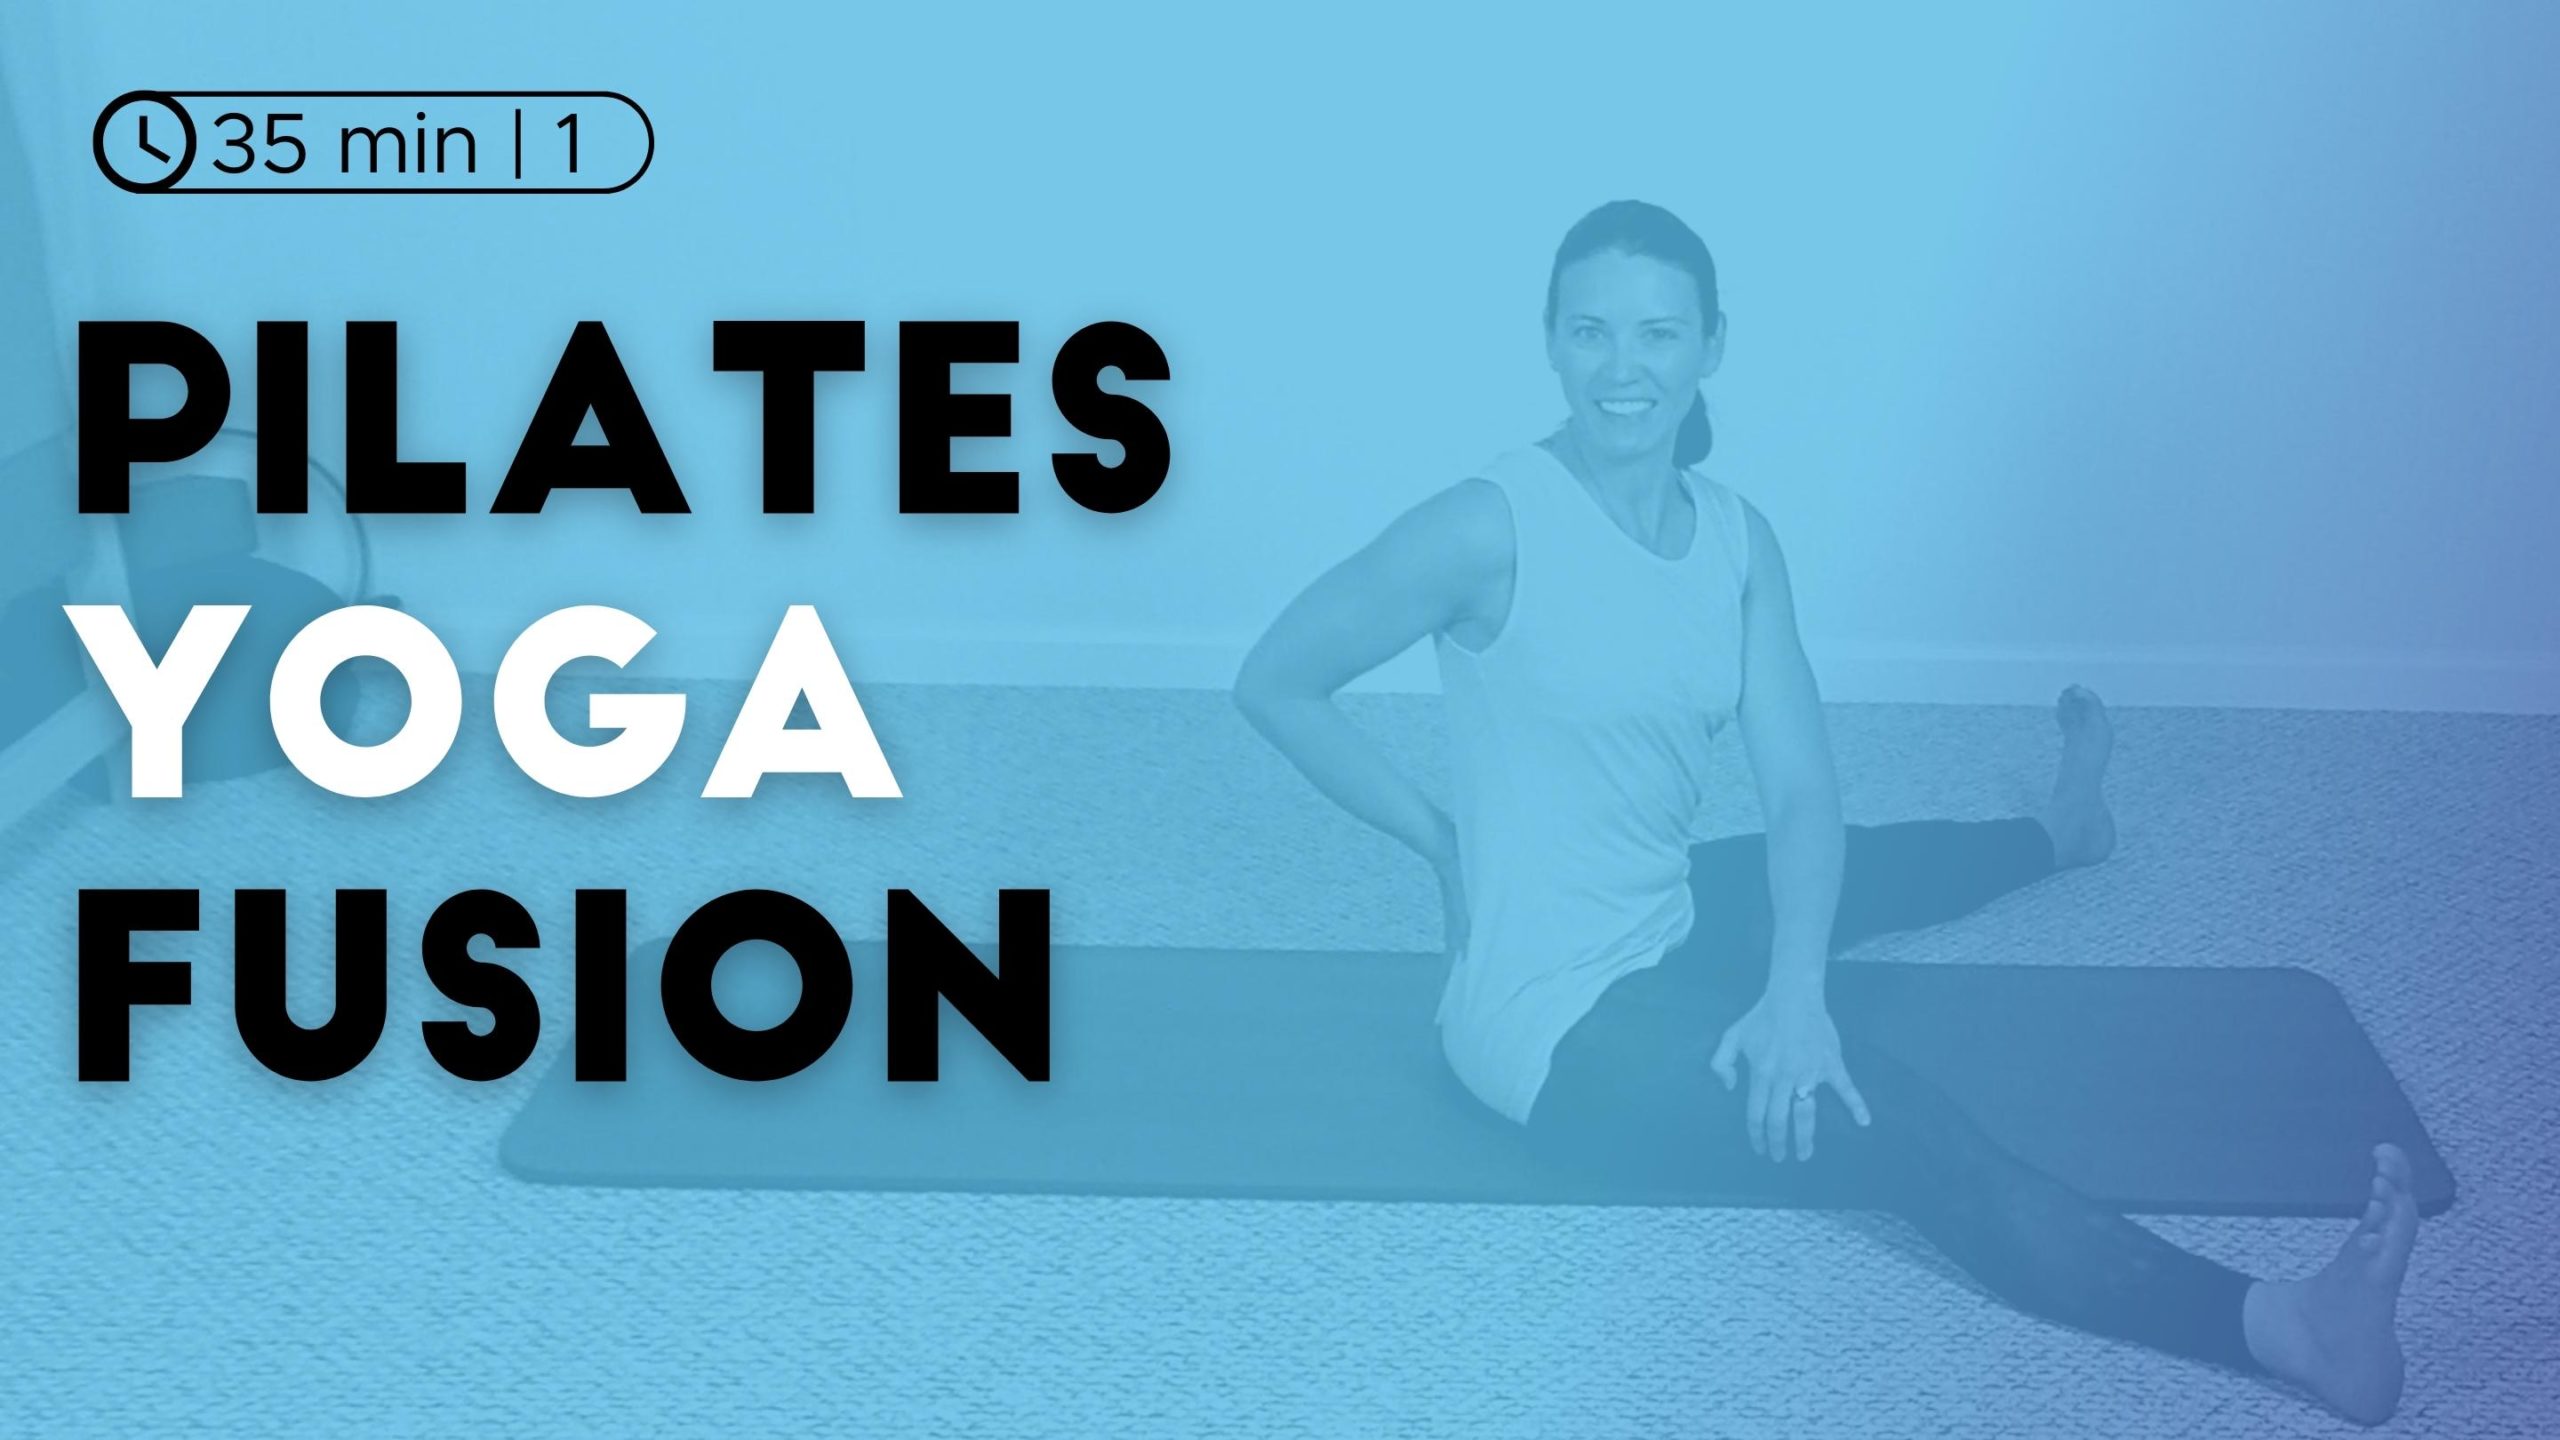 Pilates Yoga Fusion Workout